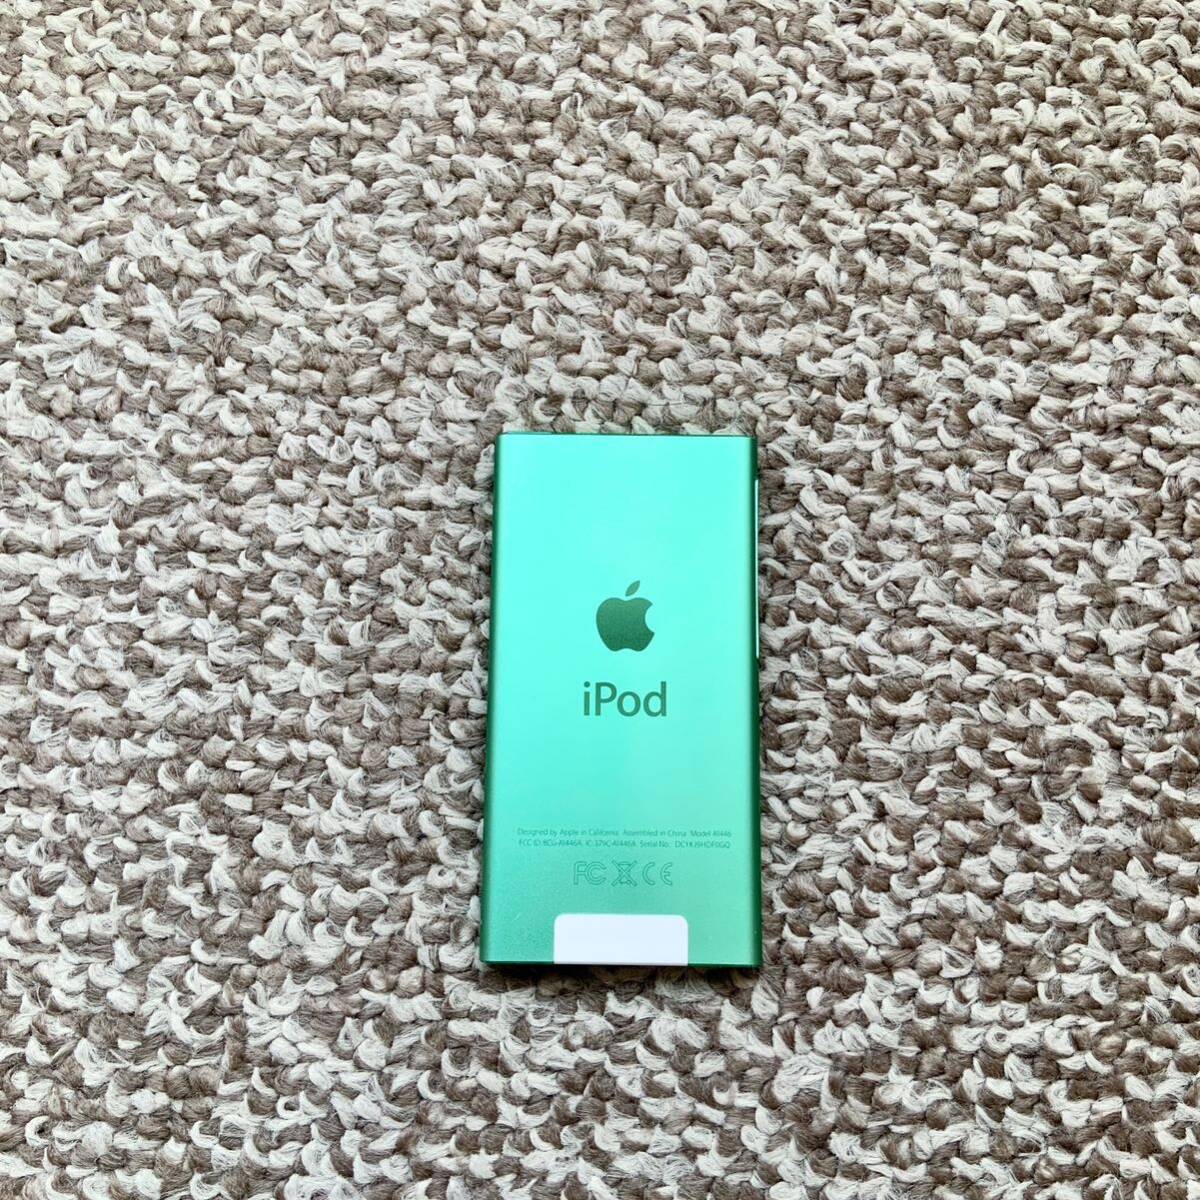 【送料無料】iPod nano 第7世代 16GB Apple アップル A1446 アイポッドナノ 本体_画像3